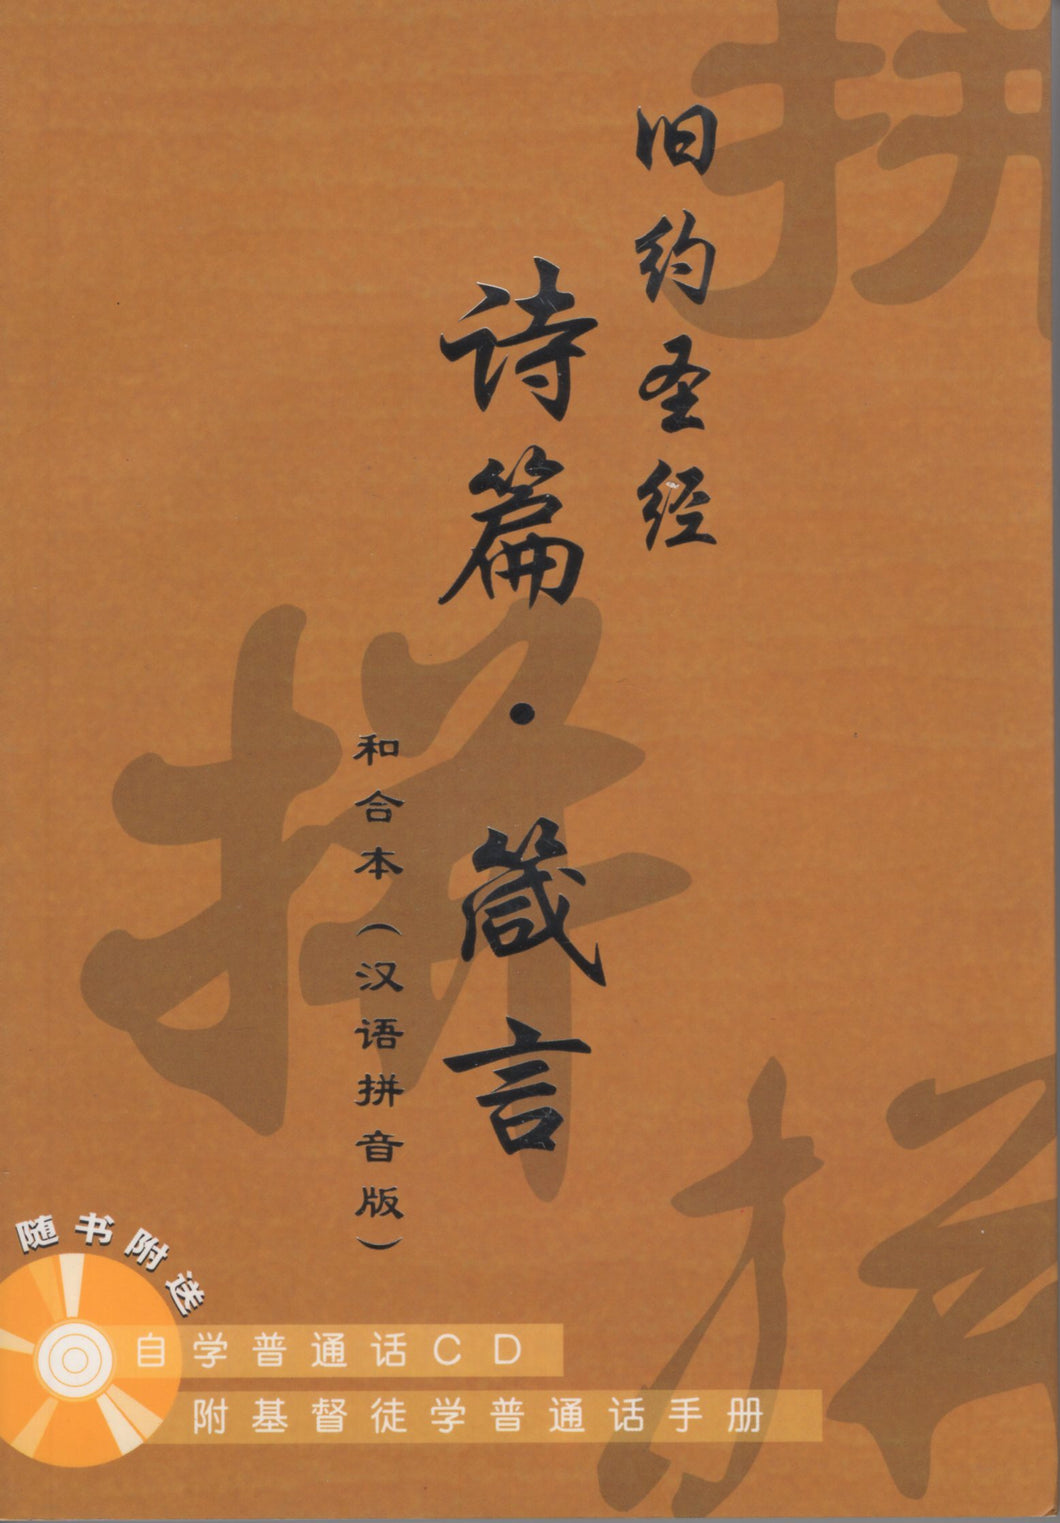 旧约圣经-诗篇、箴言汉语拼音版(和合本/简/附自学普通话CD) #01A-019B